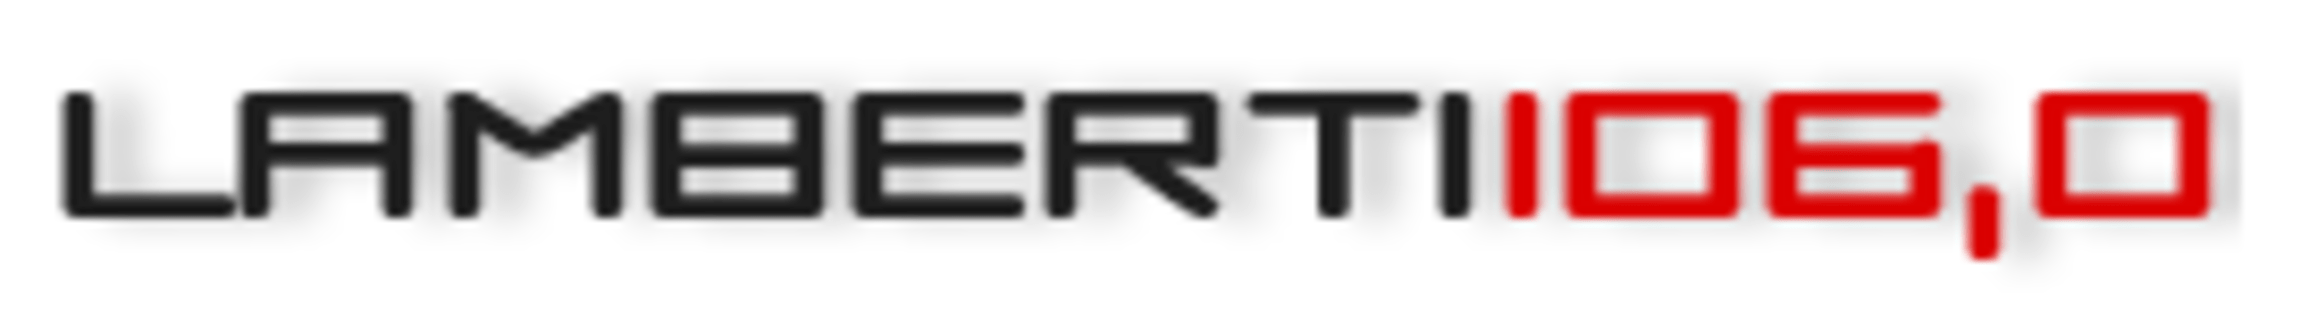 Lamberti106_logo